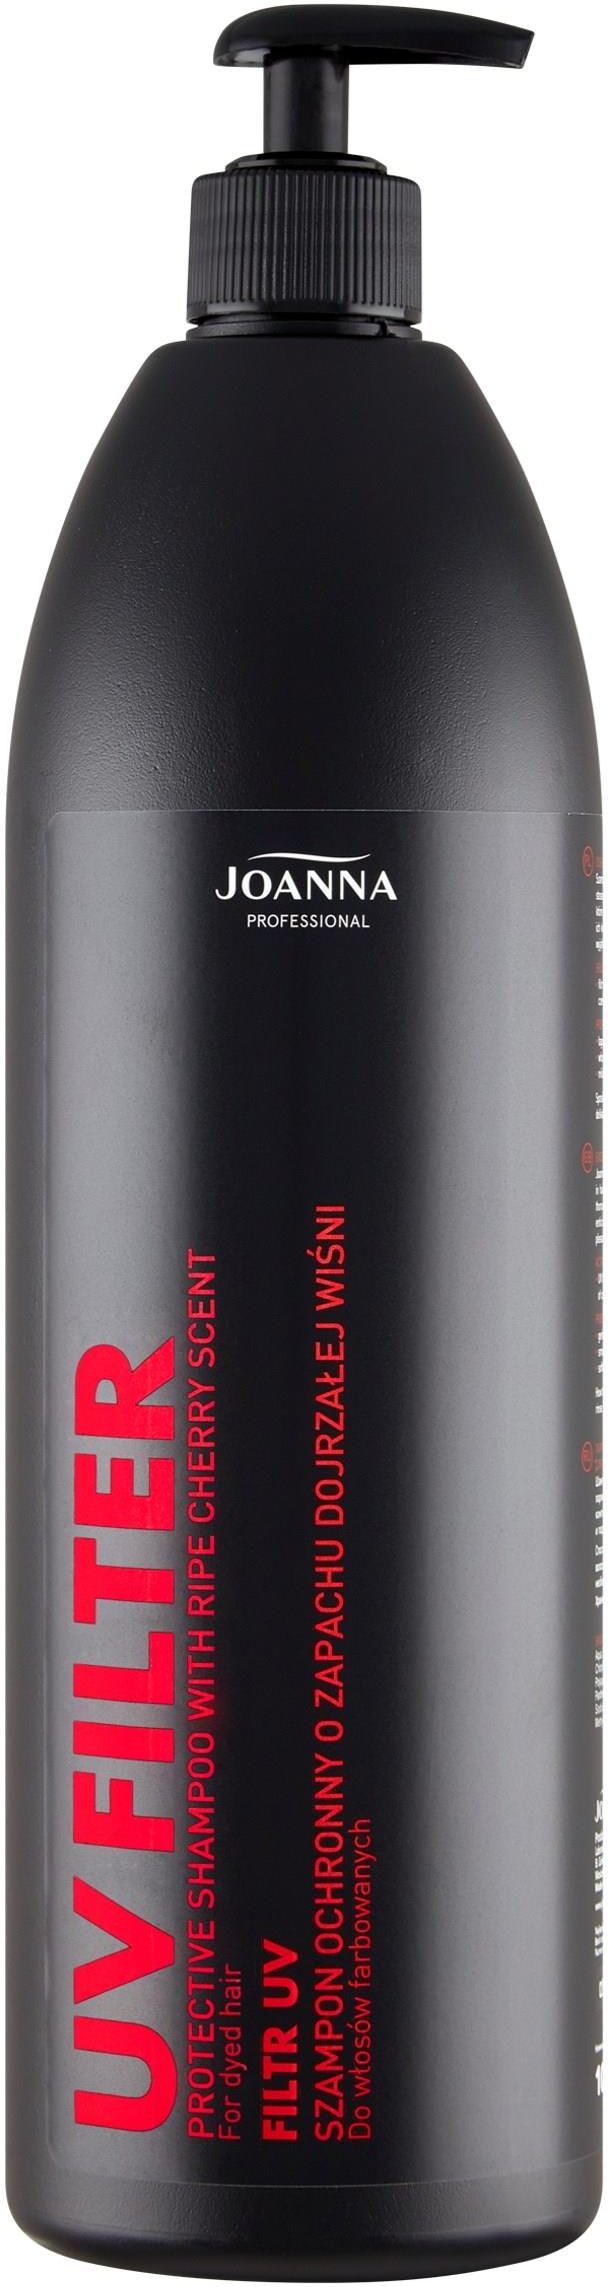 joanna szampon z filtrem uv